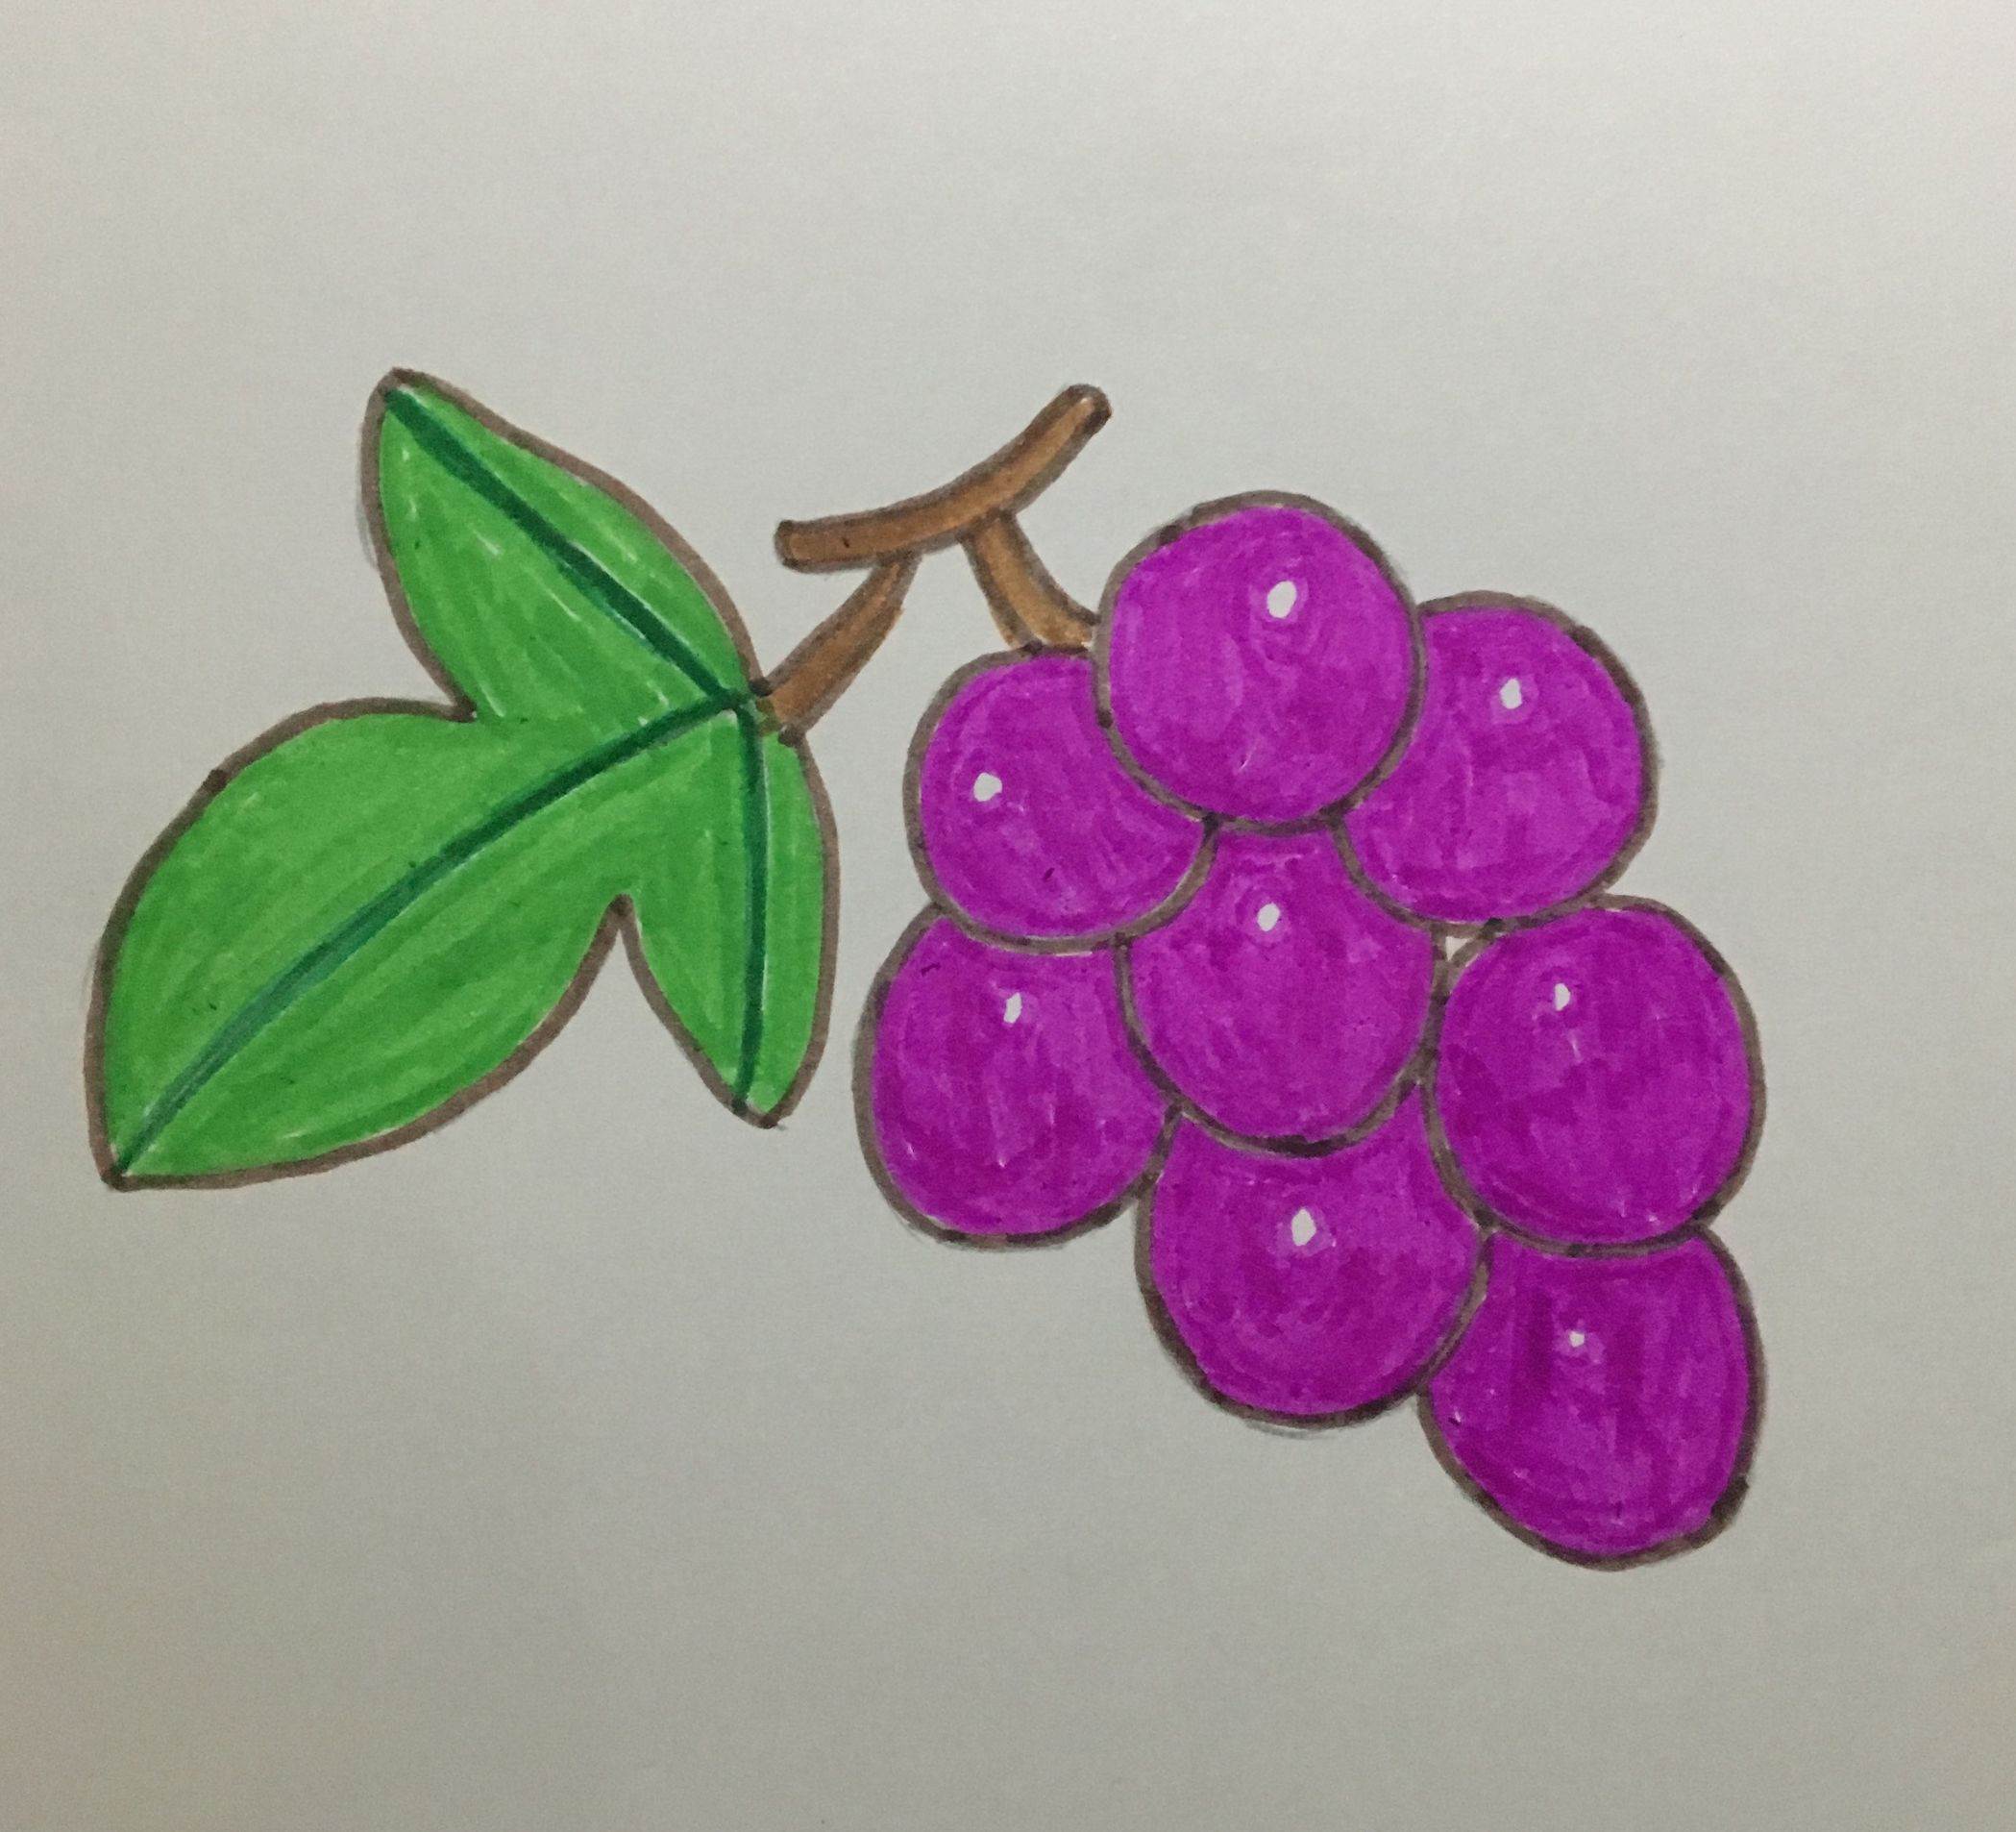 简笔画——葡萄的画法5款葡萄简笔画图片大全葡萄怎么画葡萄食物图片